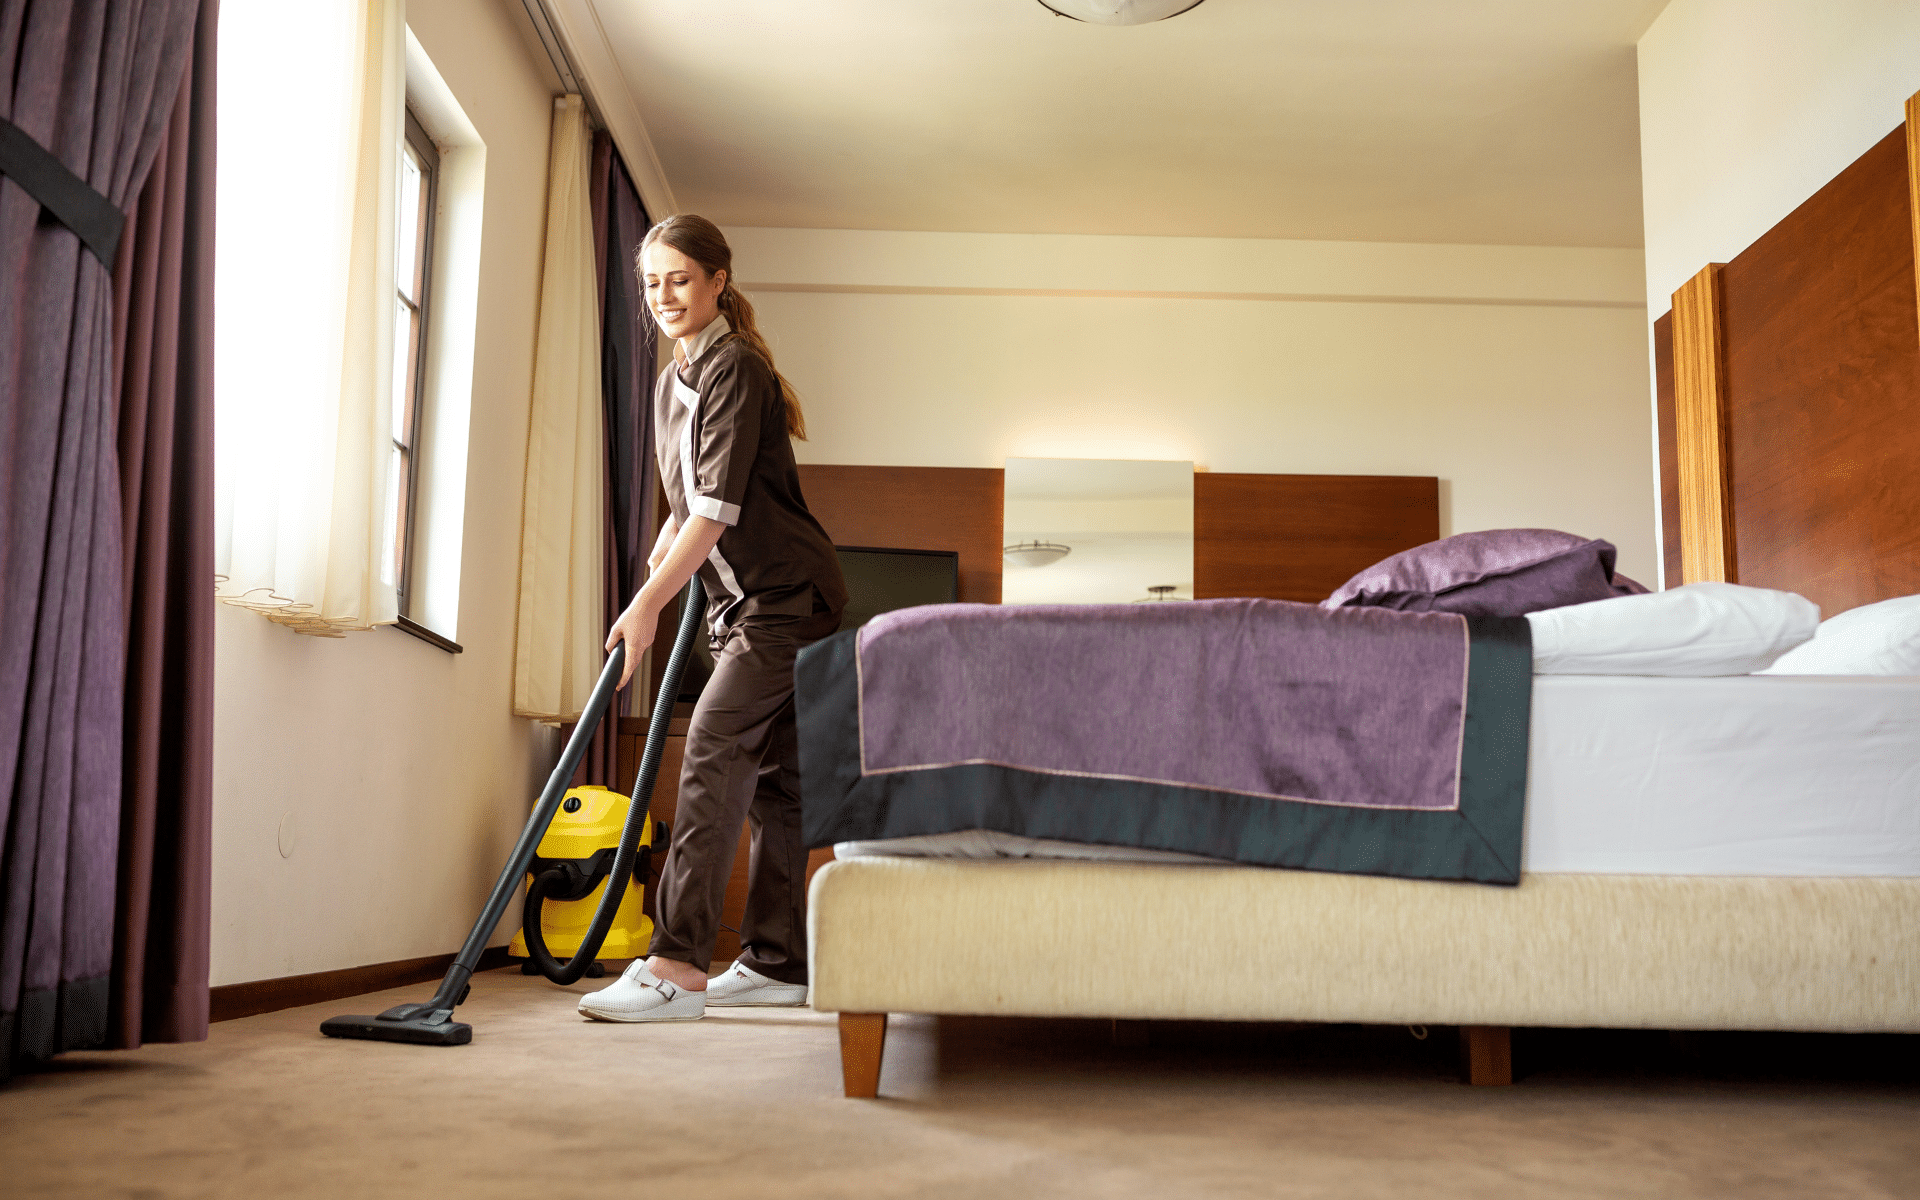 Maid vacuuming floor on bedroom